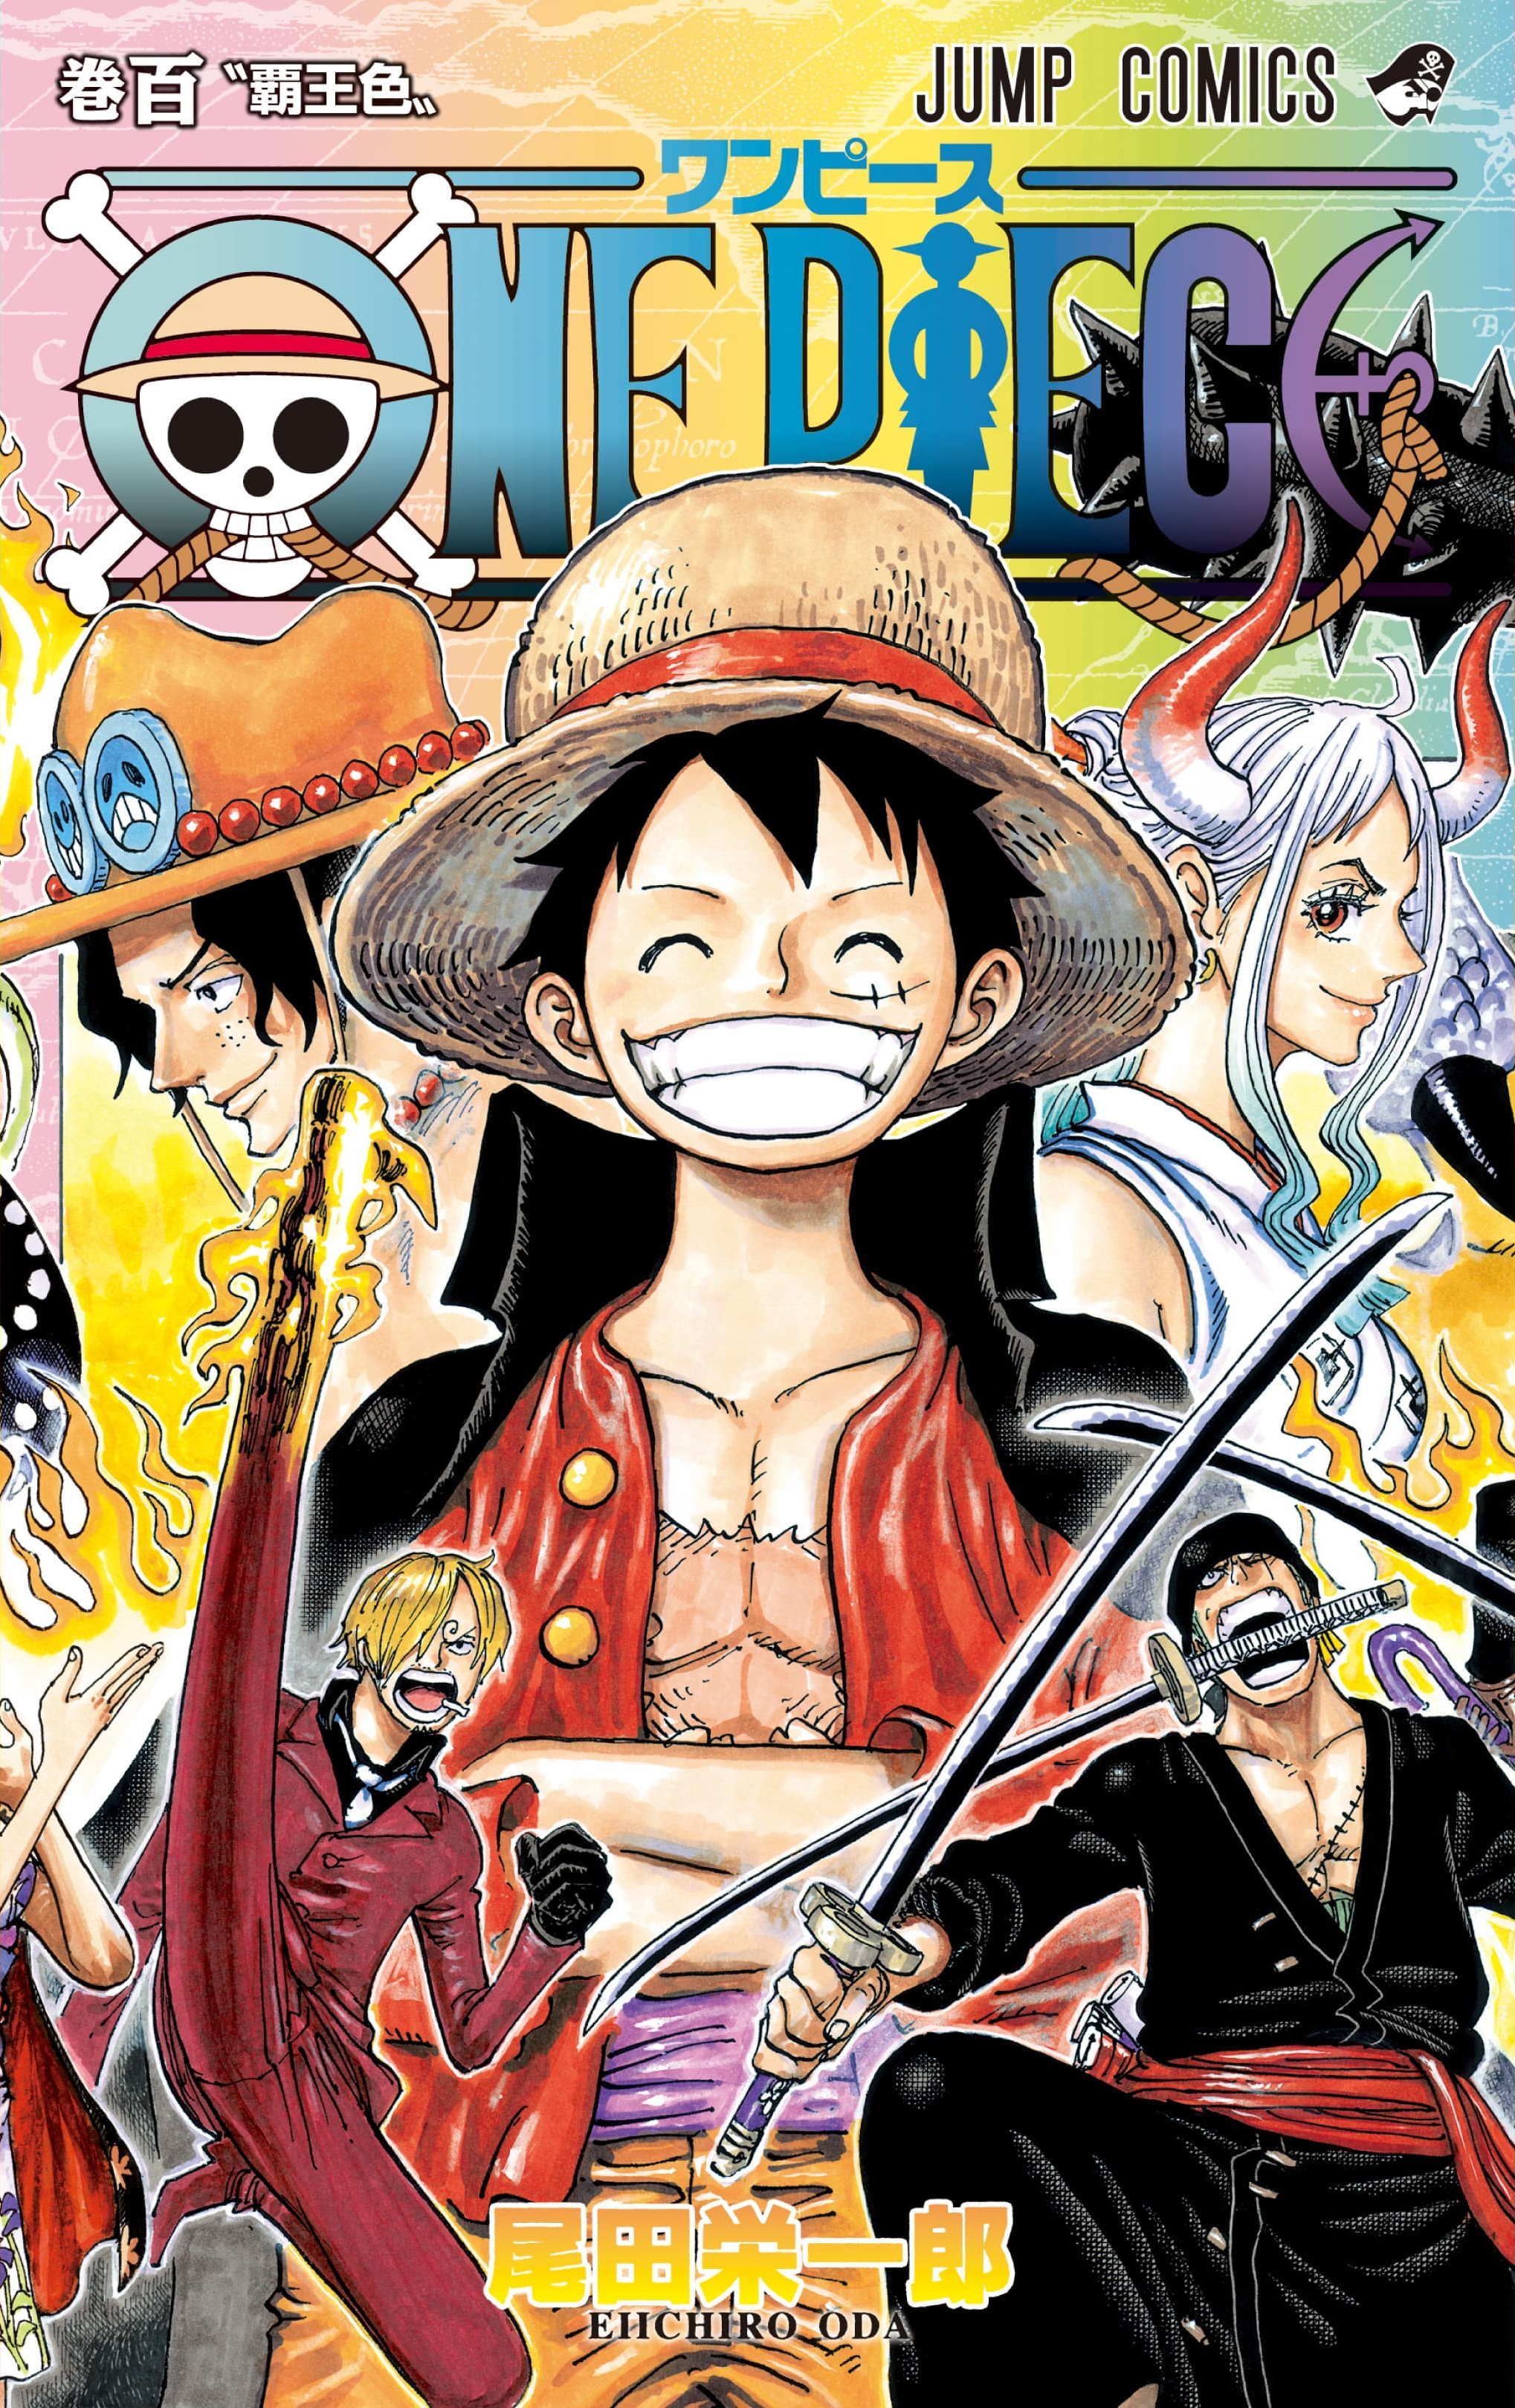 Espace Media - Nouveauté Manga ! - One Piece Tome 106 (couverture